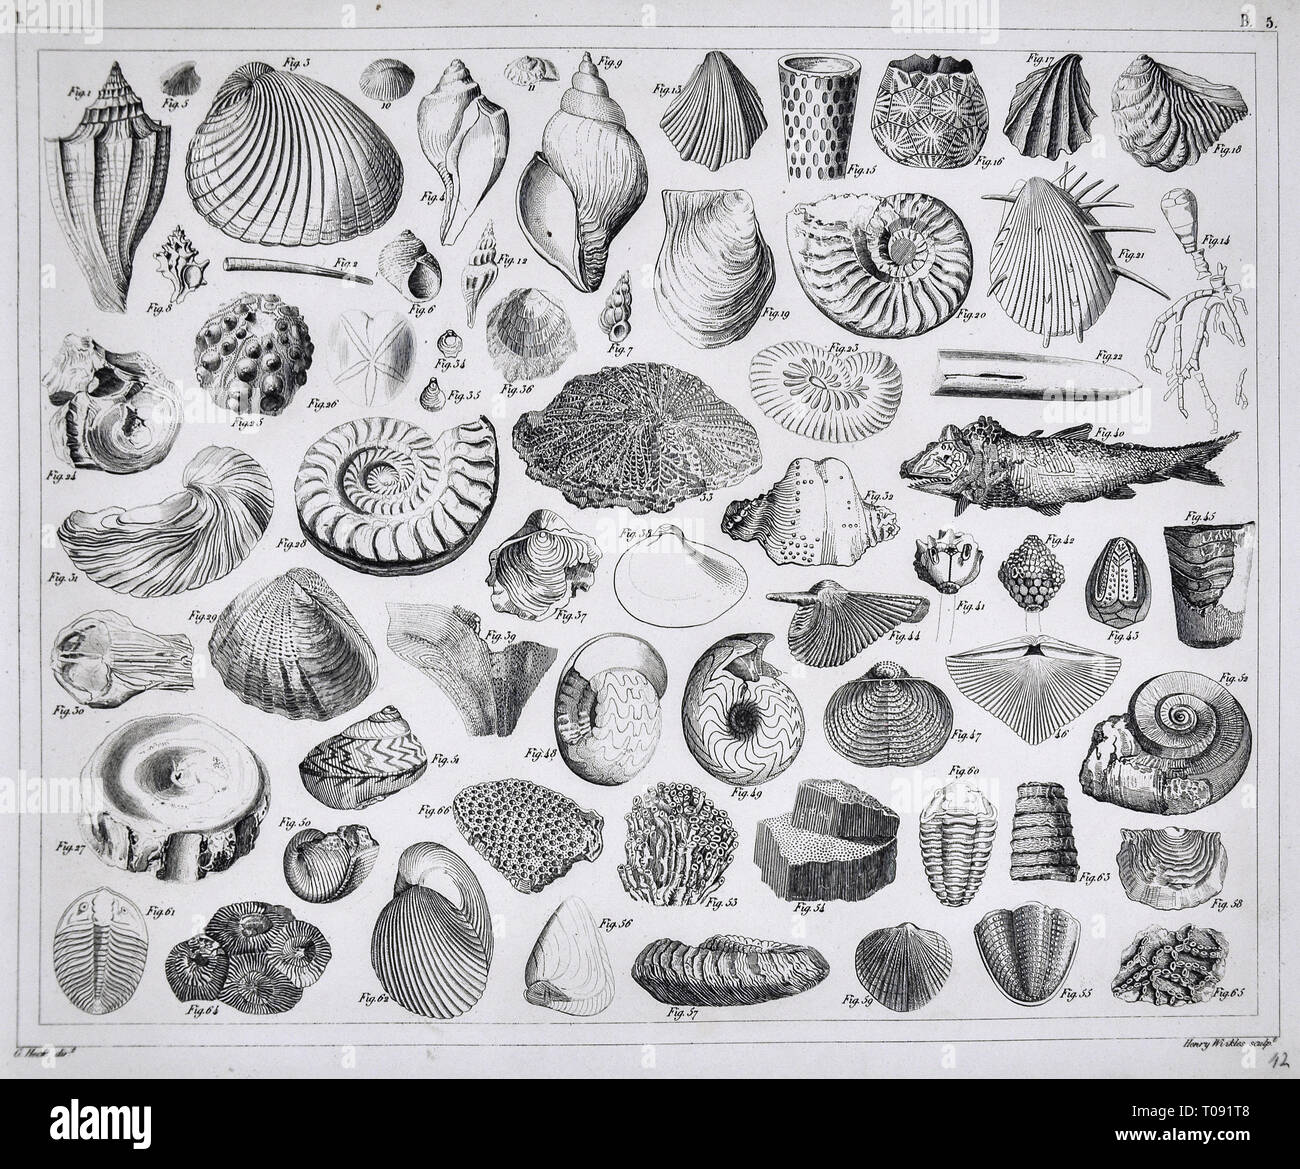 1849 Bilder Atlas - Impresión de fósiles prehistóricos del periodo Paleozoico incluyendo Brachiopod Conchas de Mar, Trilobites, amonites, corales y otras criaturas marinas Foto de stock